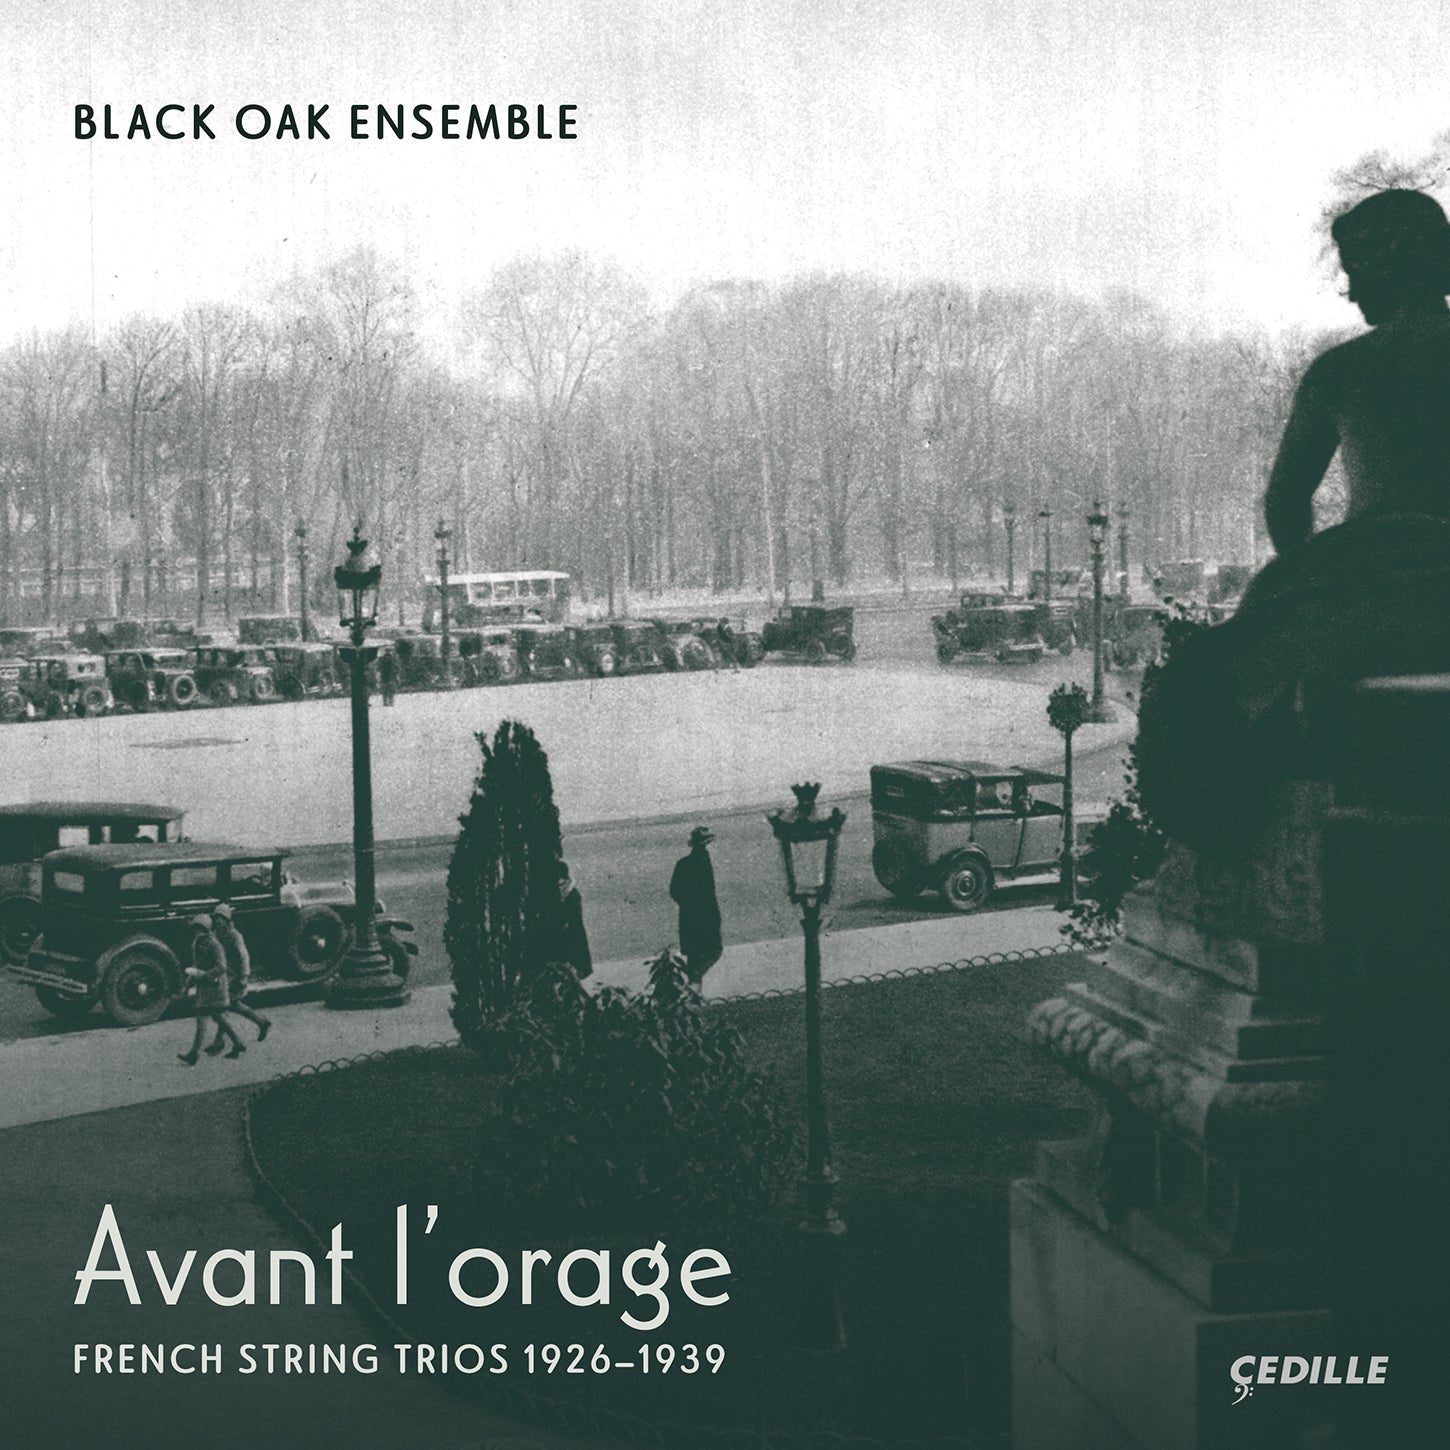 Avant l’orage - French String Trios 1926-1939 / Black Oak Ensemble